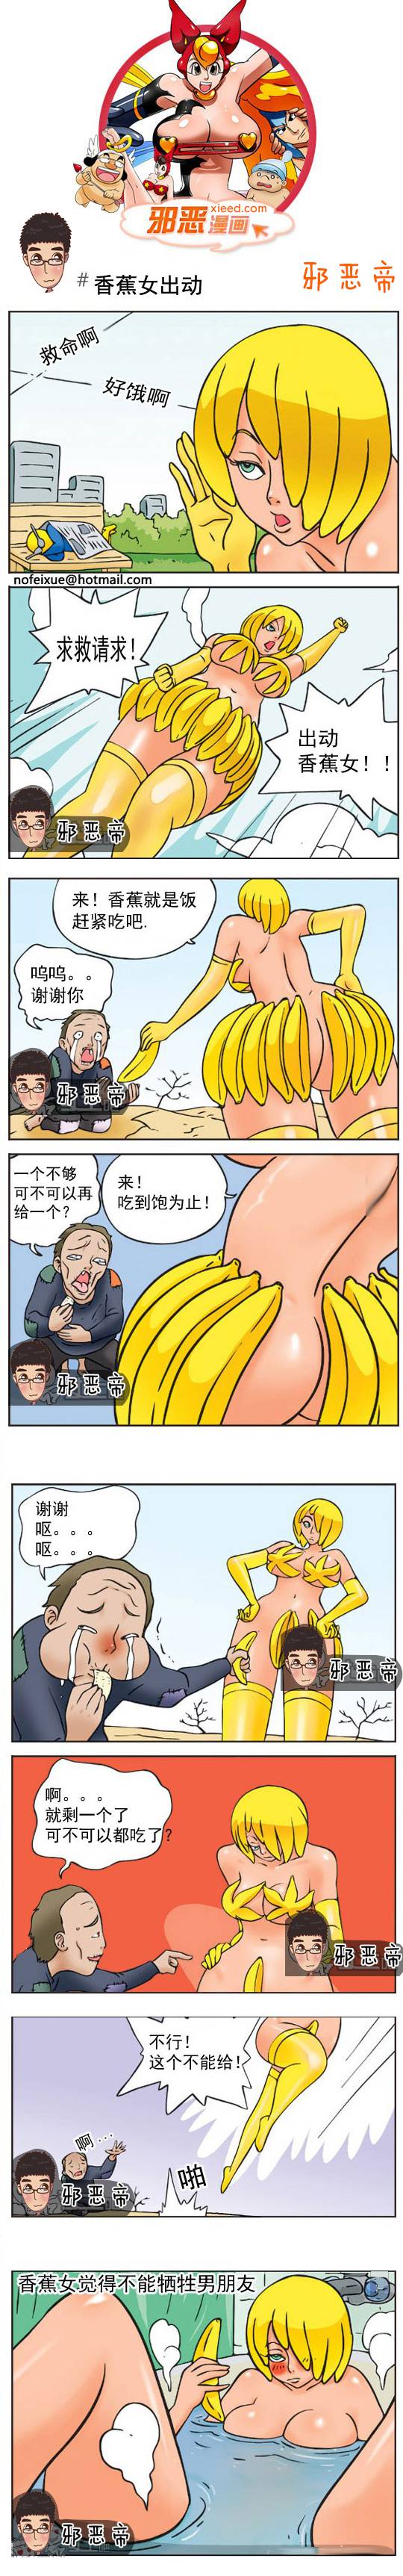 邪恶漫画爆笑囧图第338刊：香蕉女出动